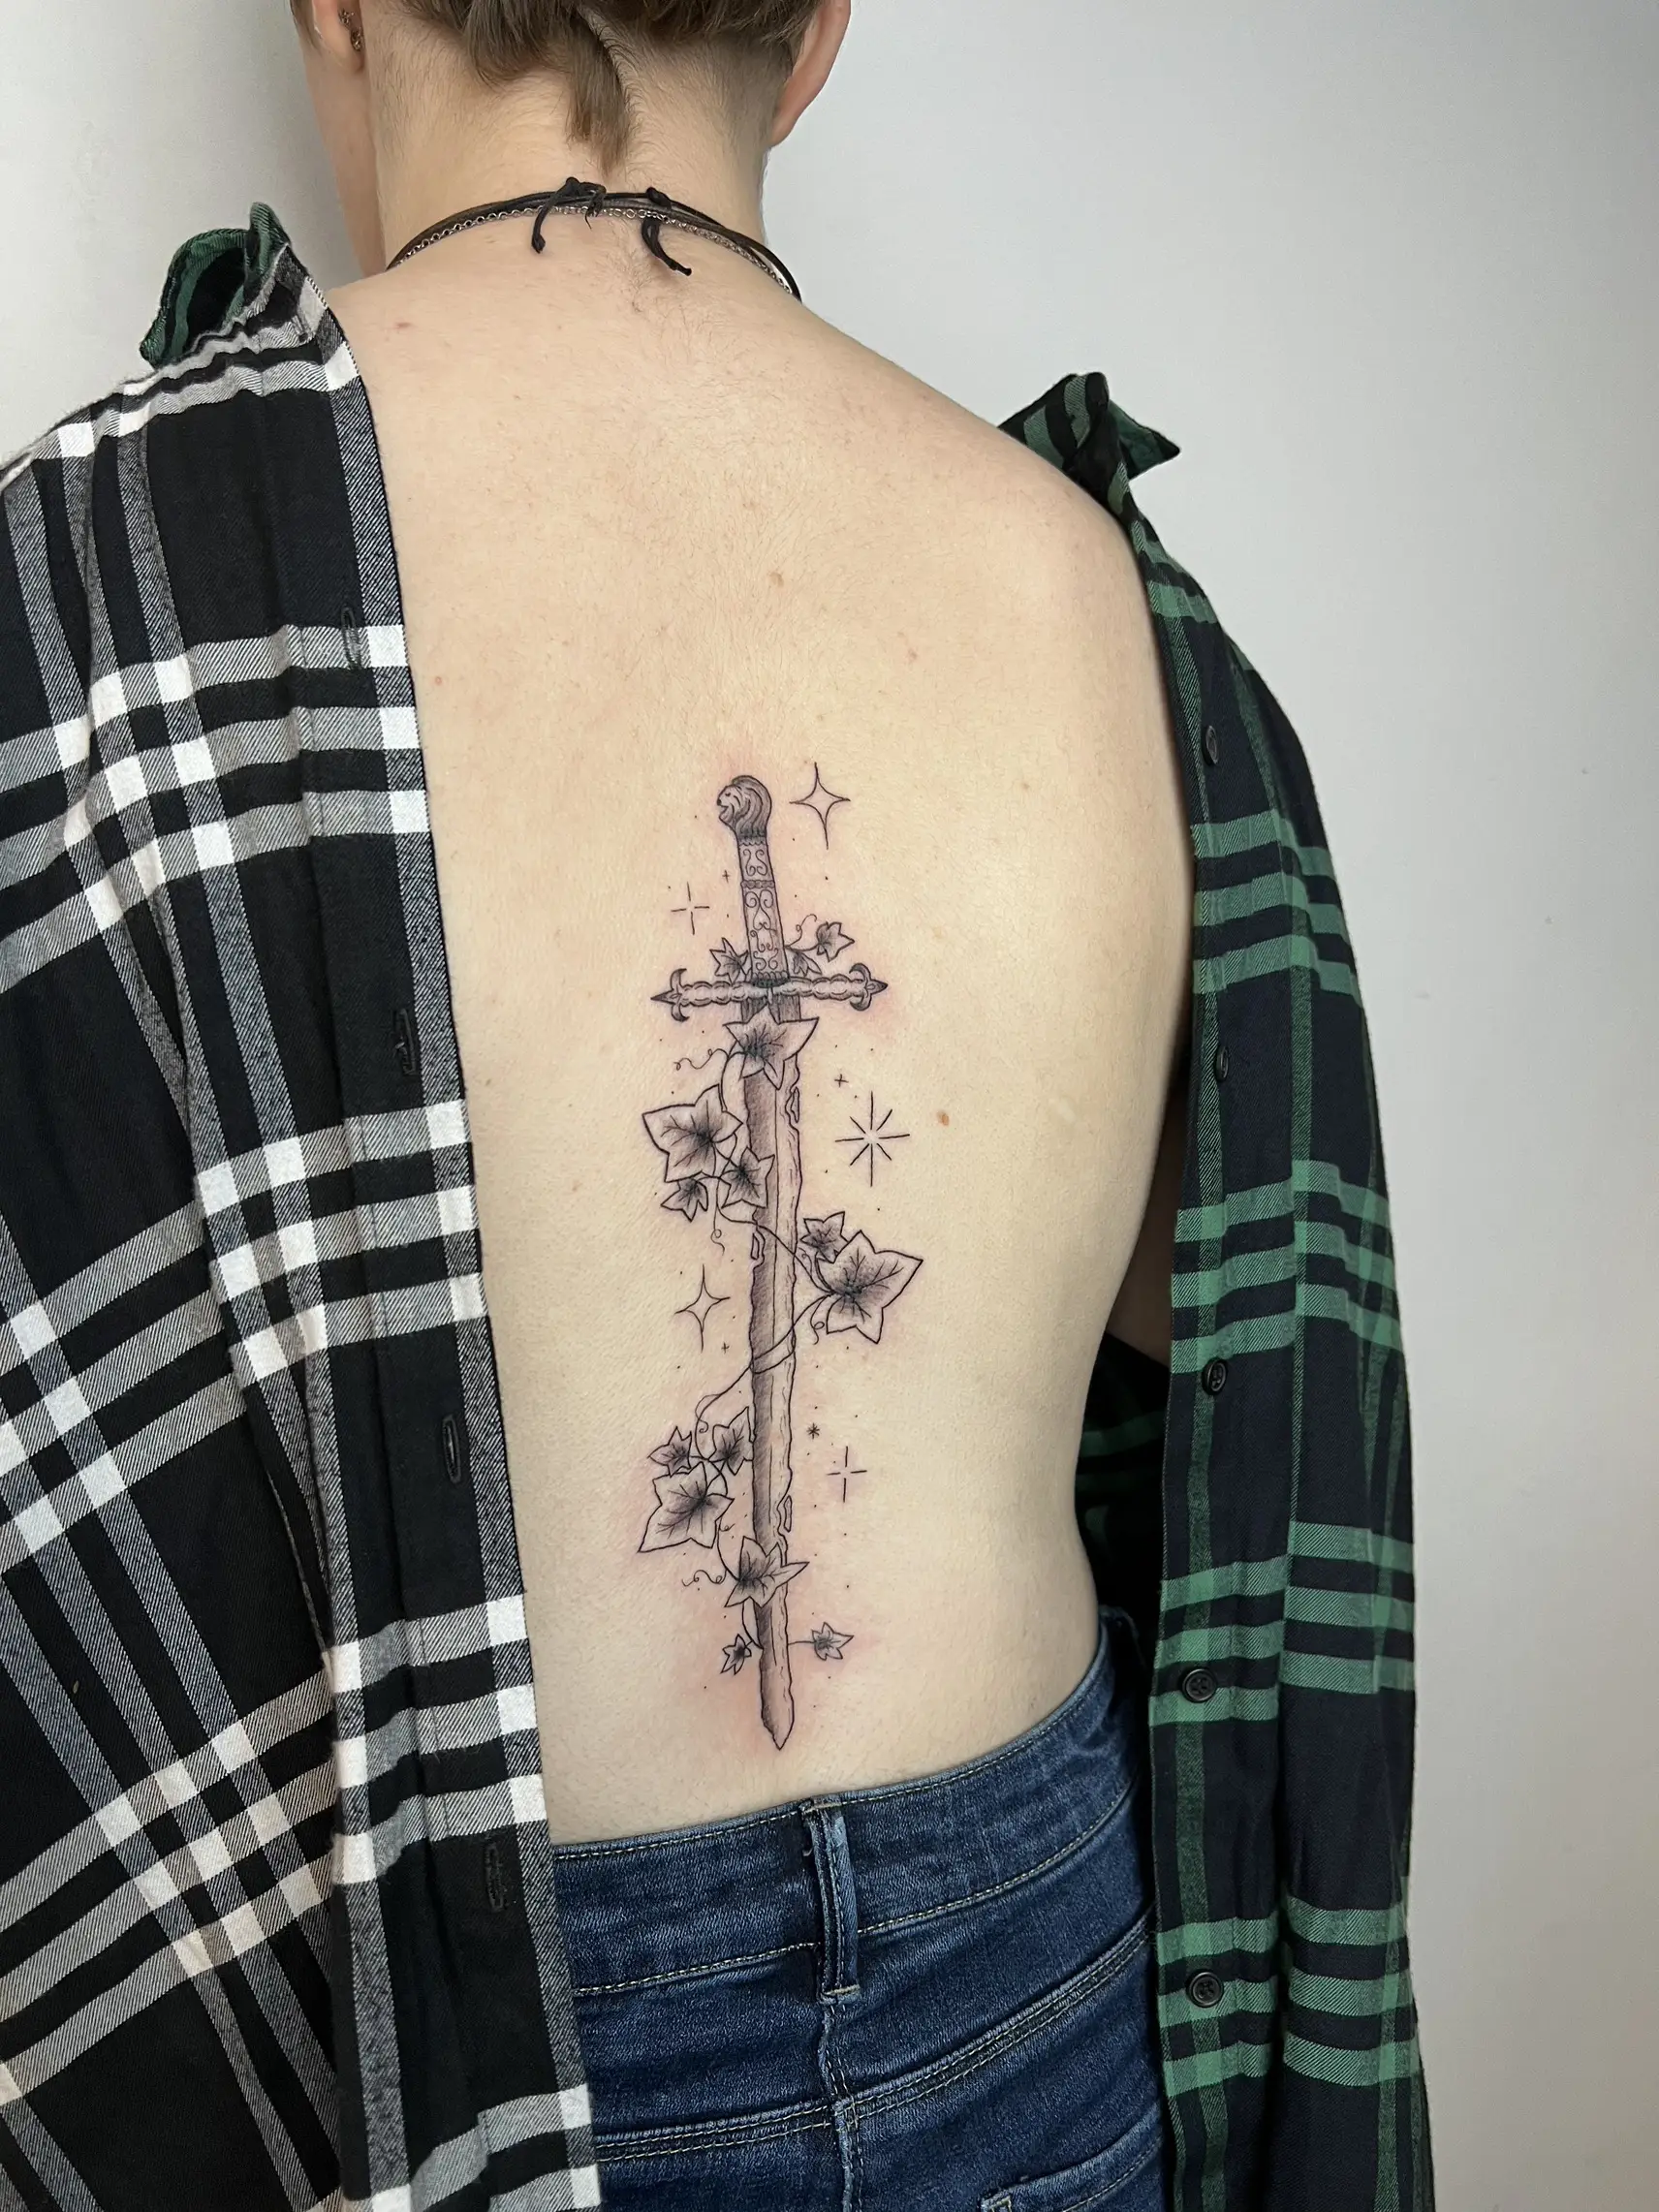 Fineline Minimalist Spine Tattoo  Line tattoos, Spine tattoo, Spine tattoos